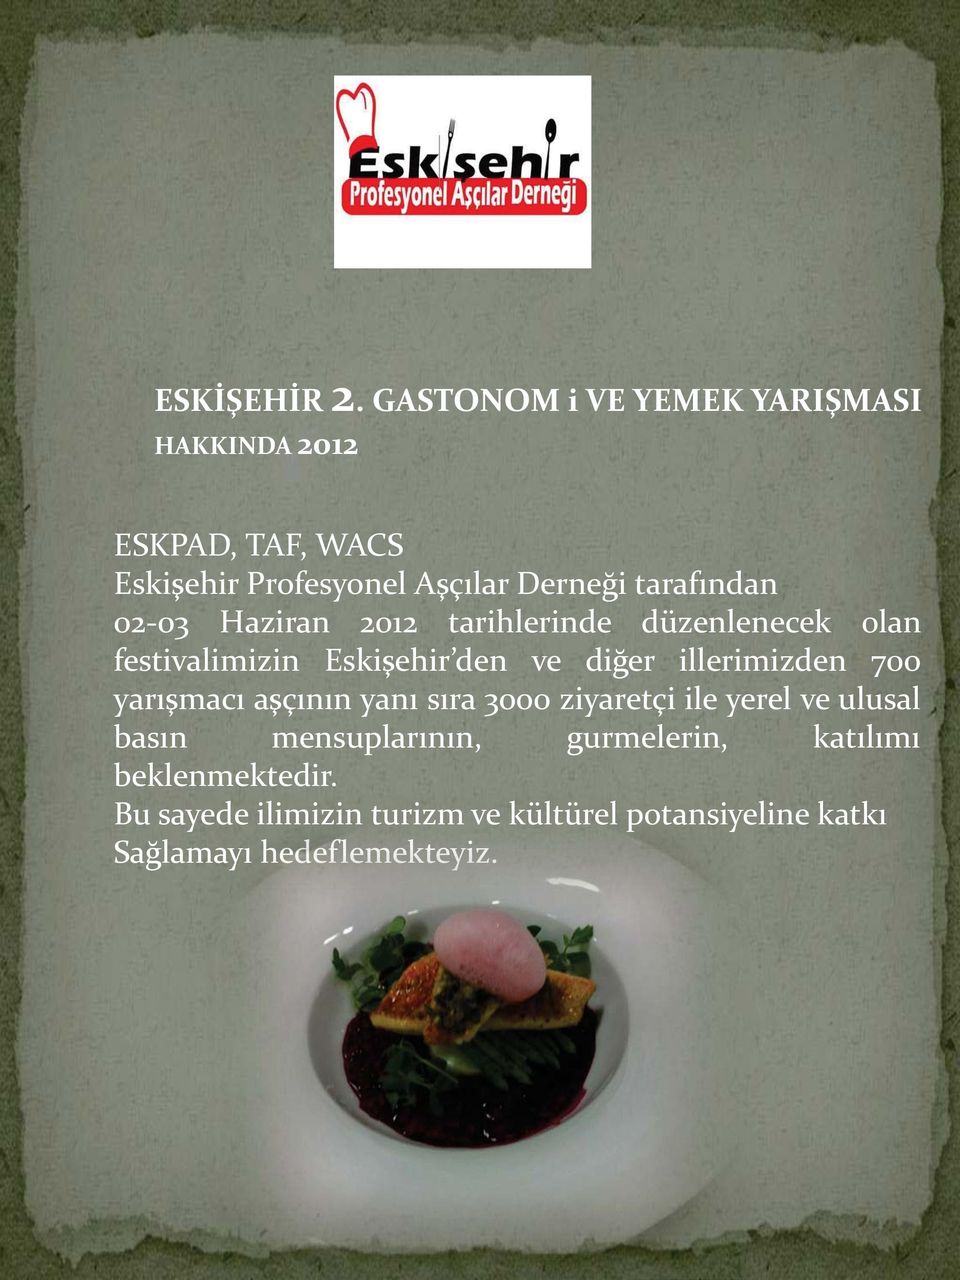 tarafından 02-03 Haziran 2012 tarihlerinde düzenlenecek olan festivalimizin Eskişehir den ve diğer